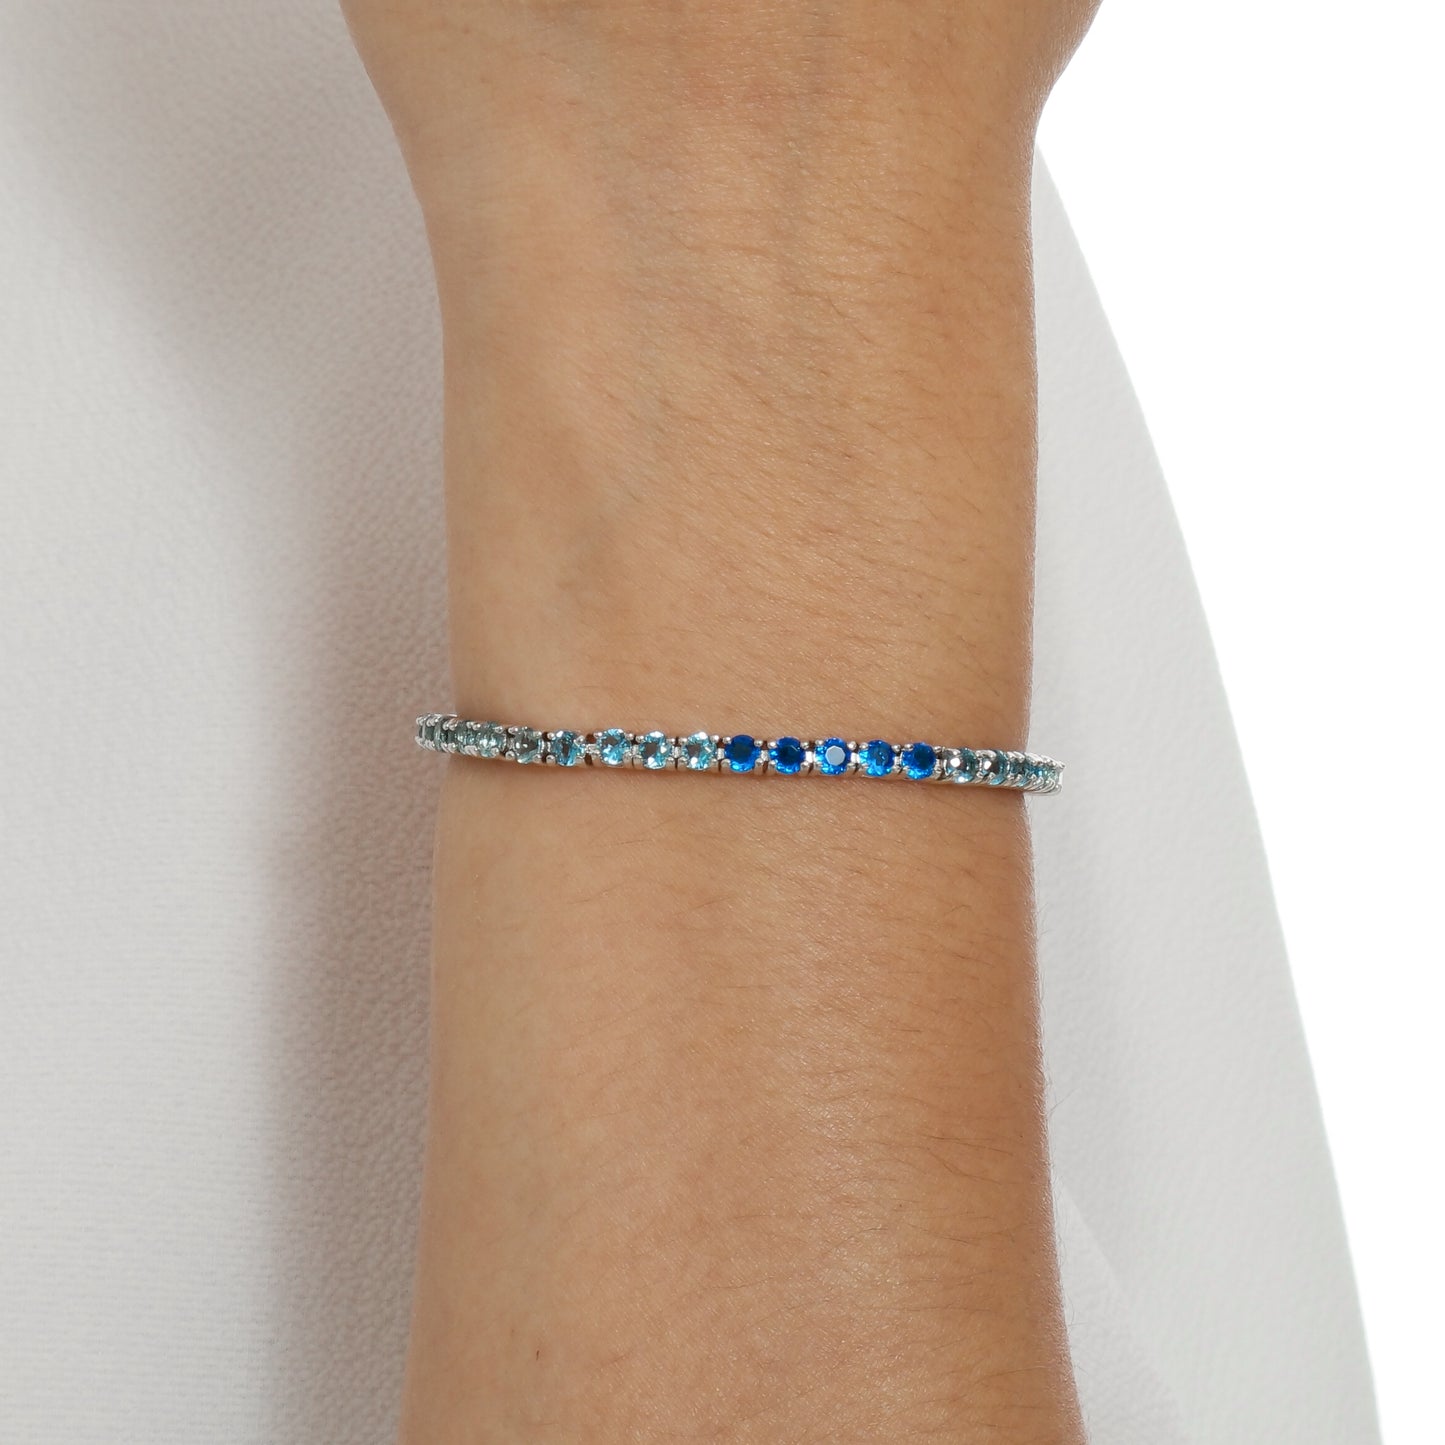 Pulseira Riviera Azul e Branco | Citrine Concept Jewelry